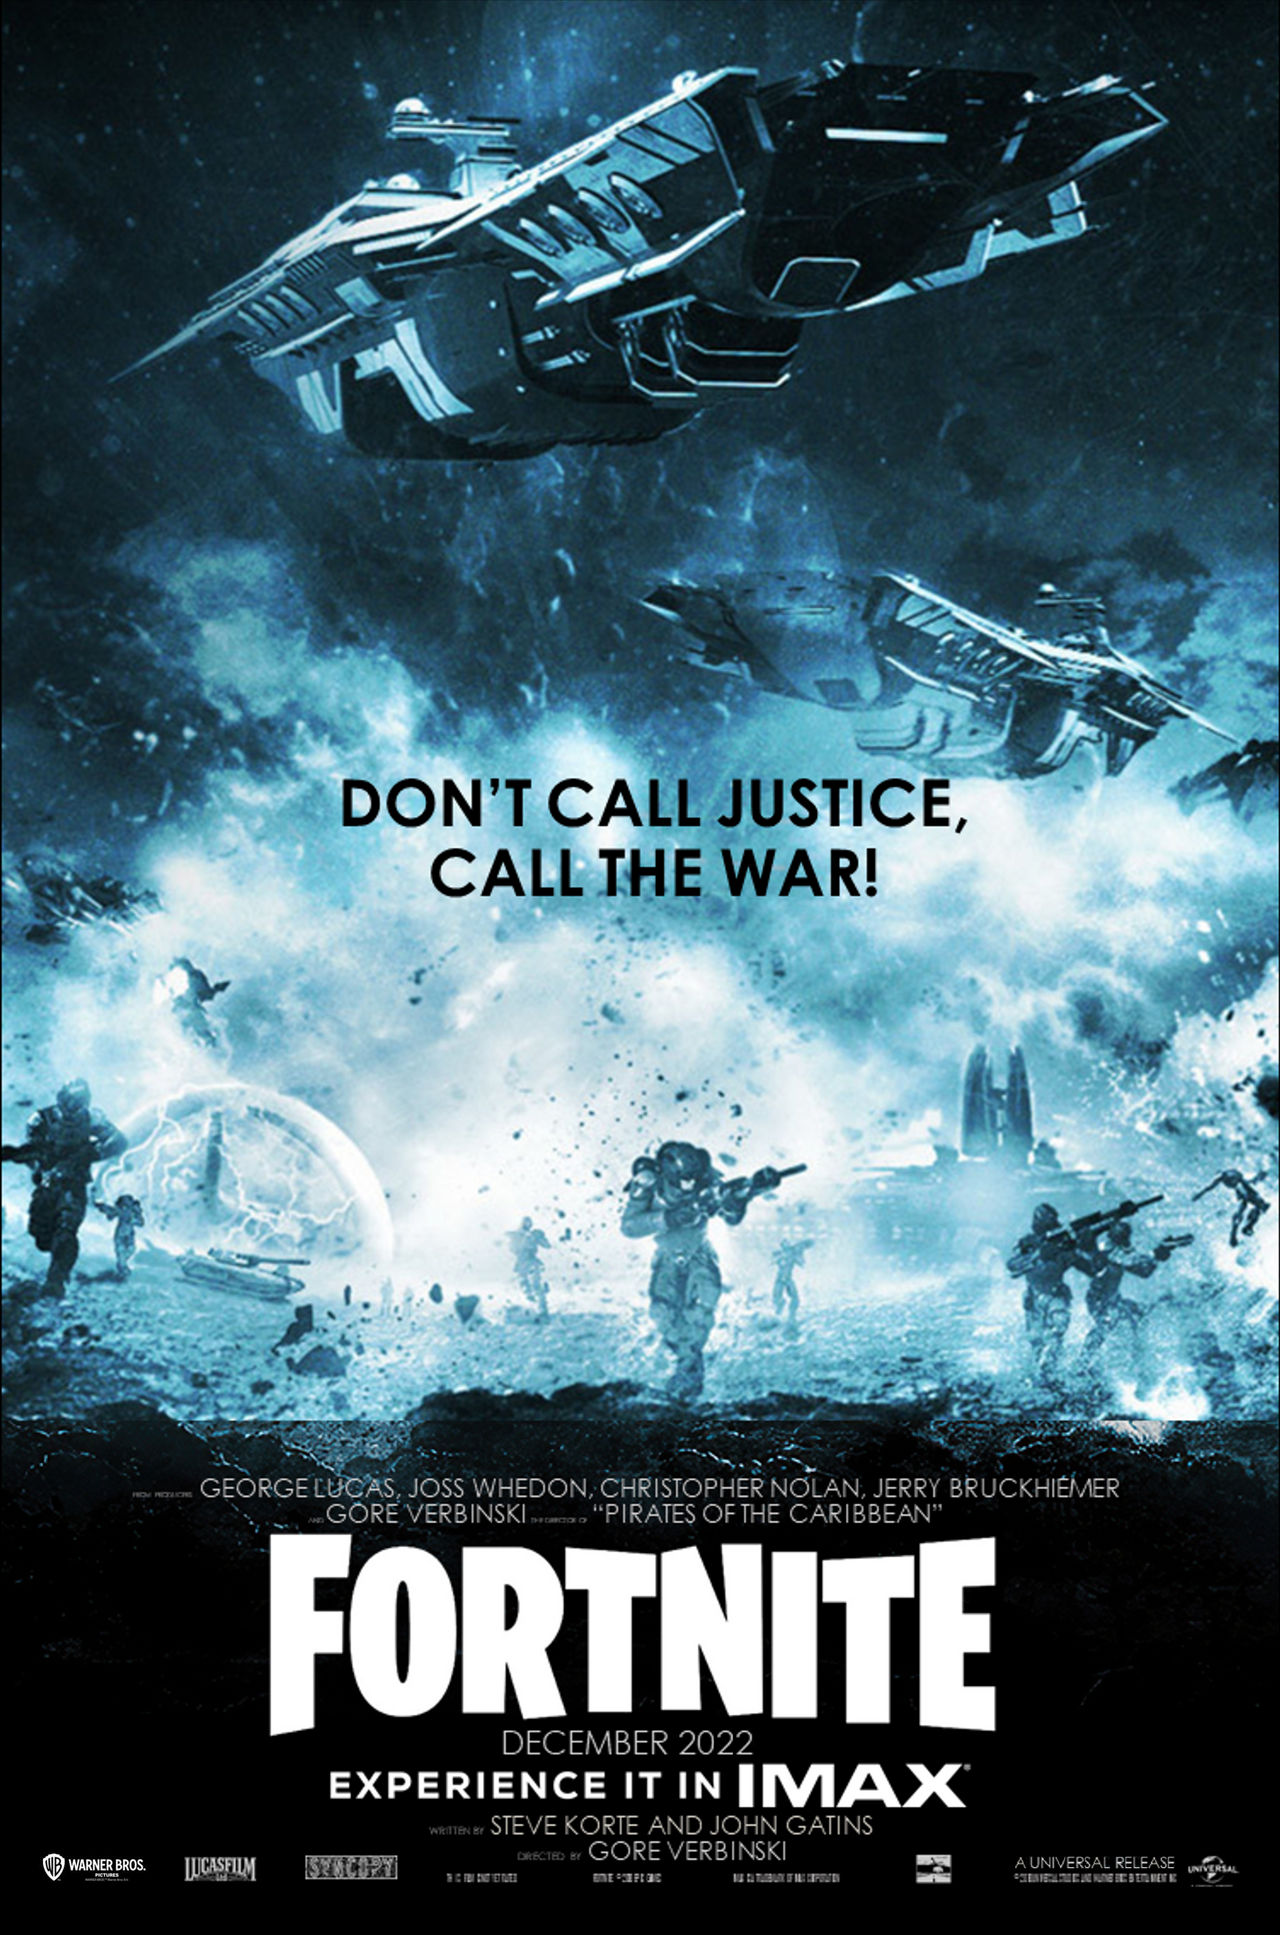 Fortnite (2022) Movie Poster by AlexTheTetrisFan on DeviantArt